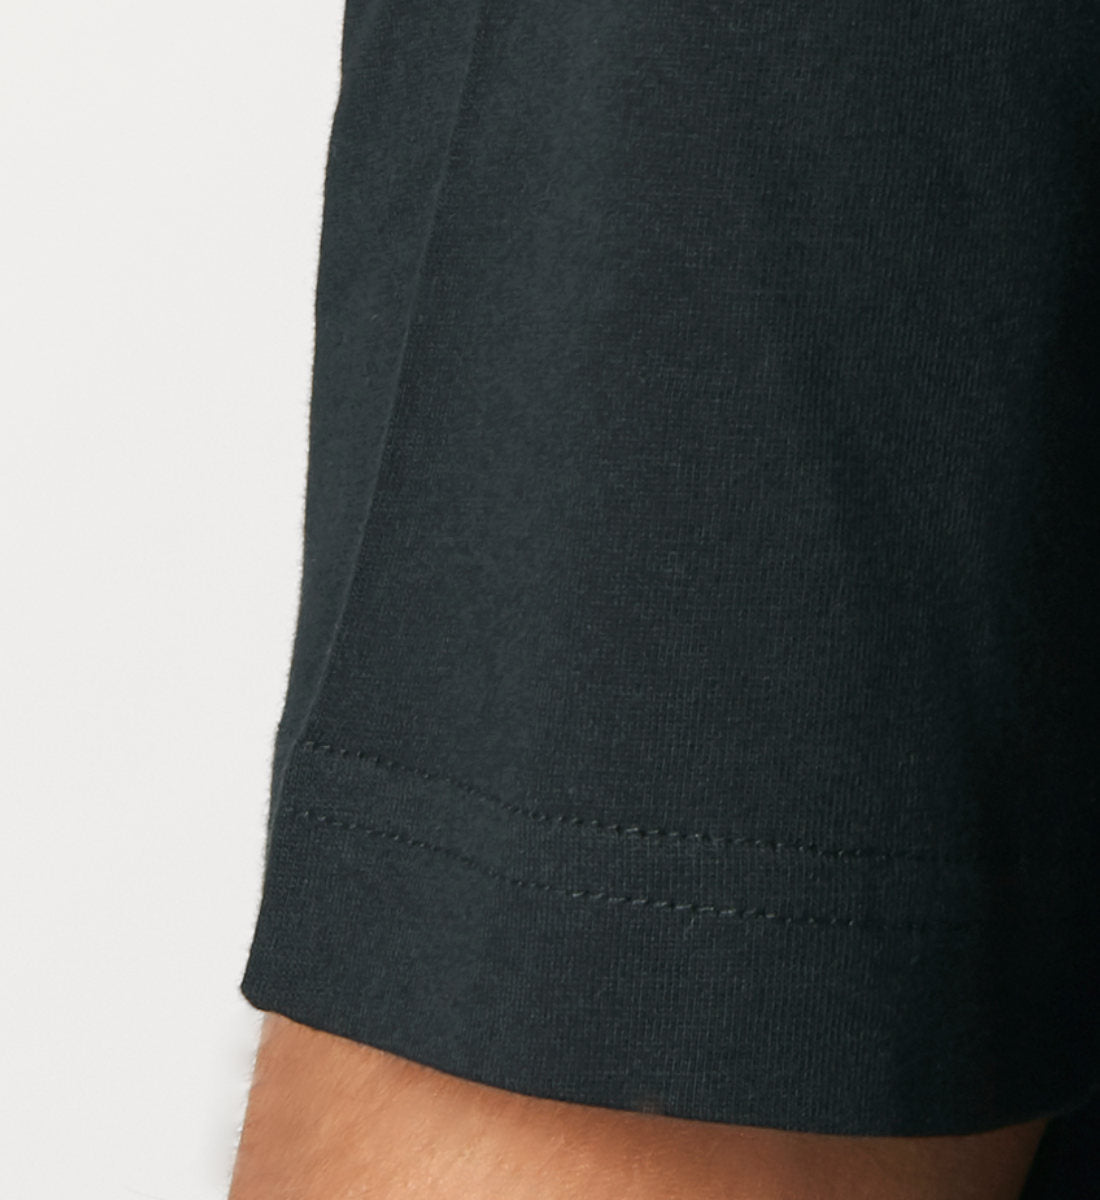 Schwarzes T-Shirt Unisex Relaxed Fit für Frauen und Männer bedruckt mit dem Design der Roger Rockawoo Kollektion BMX Bunny Hop frohe Ostern